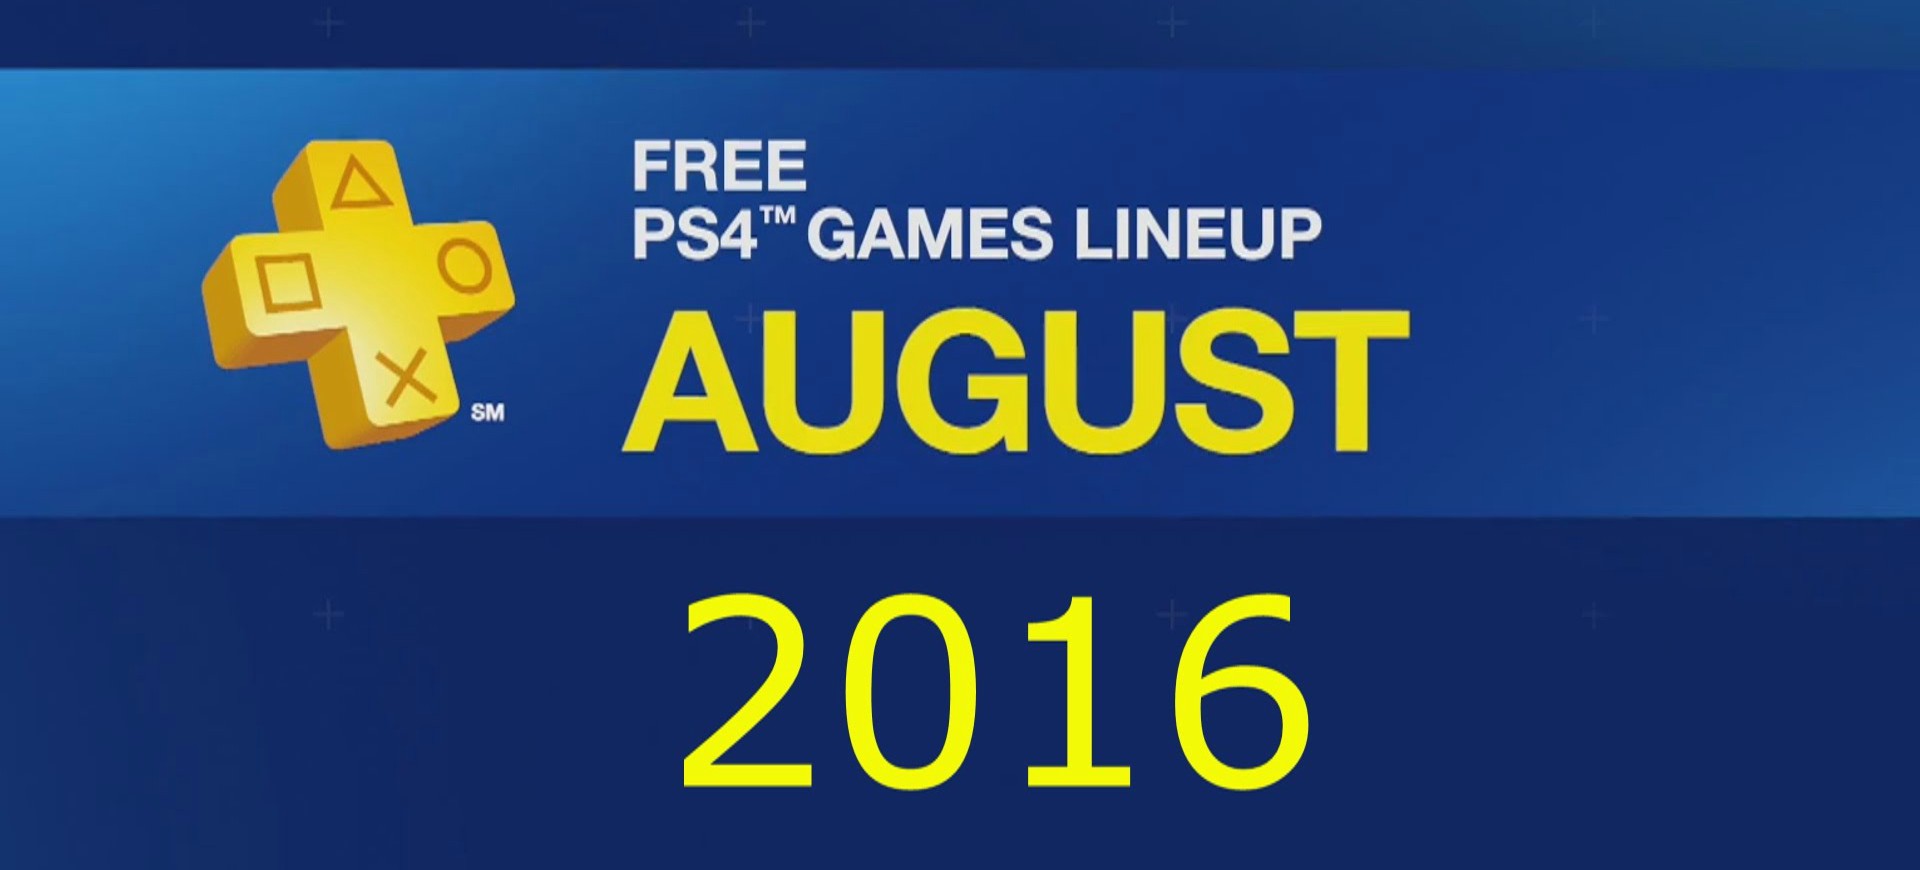 PlayStation Plus công bố danh sách game miễn phí trong tháng 8 - Tin game